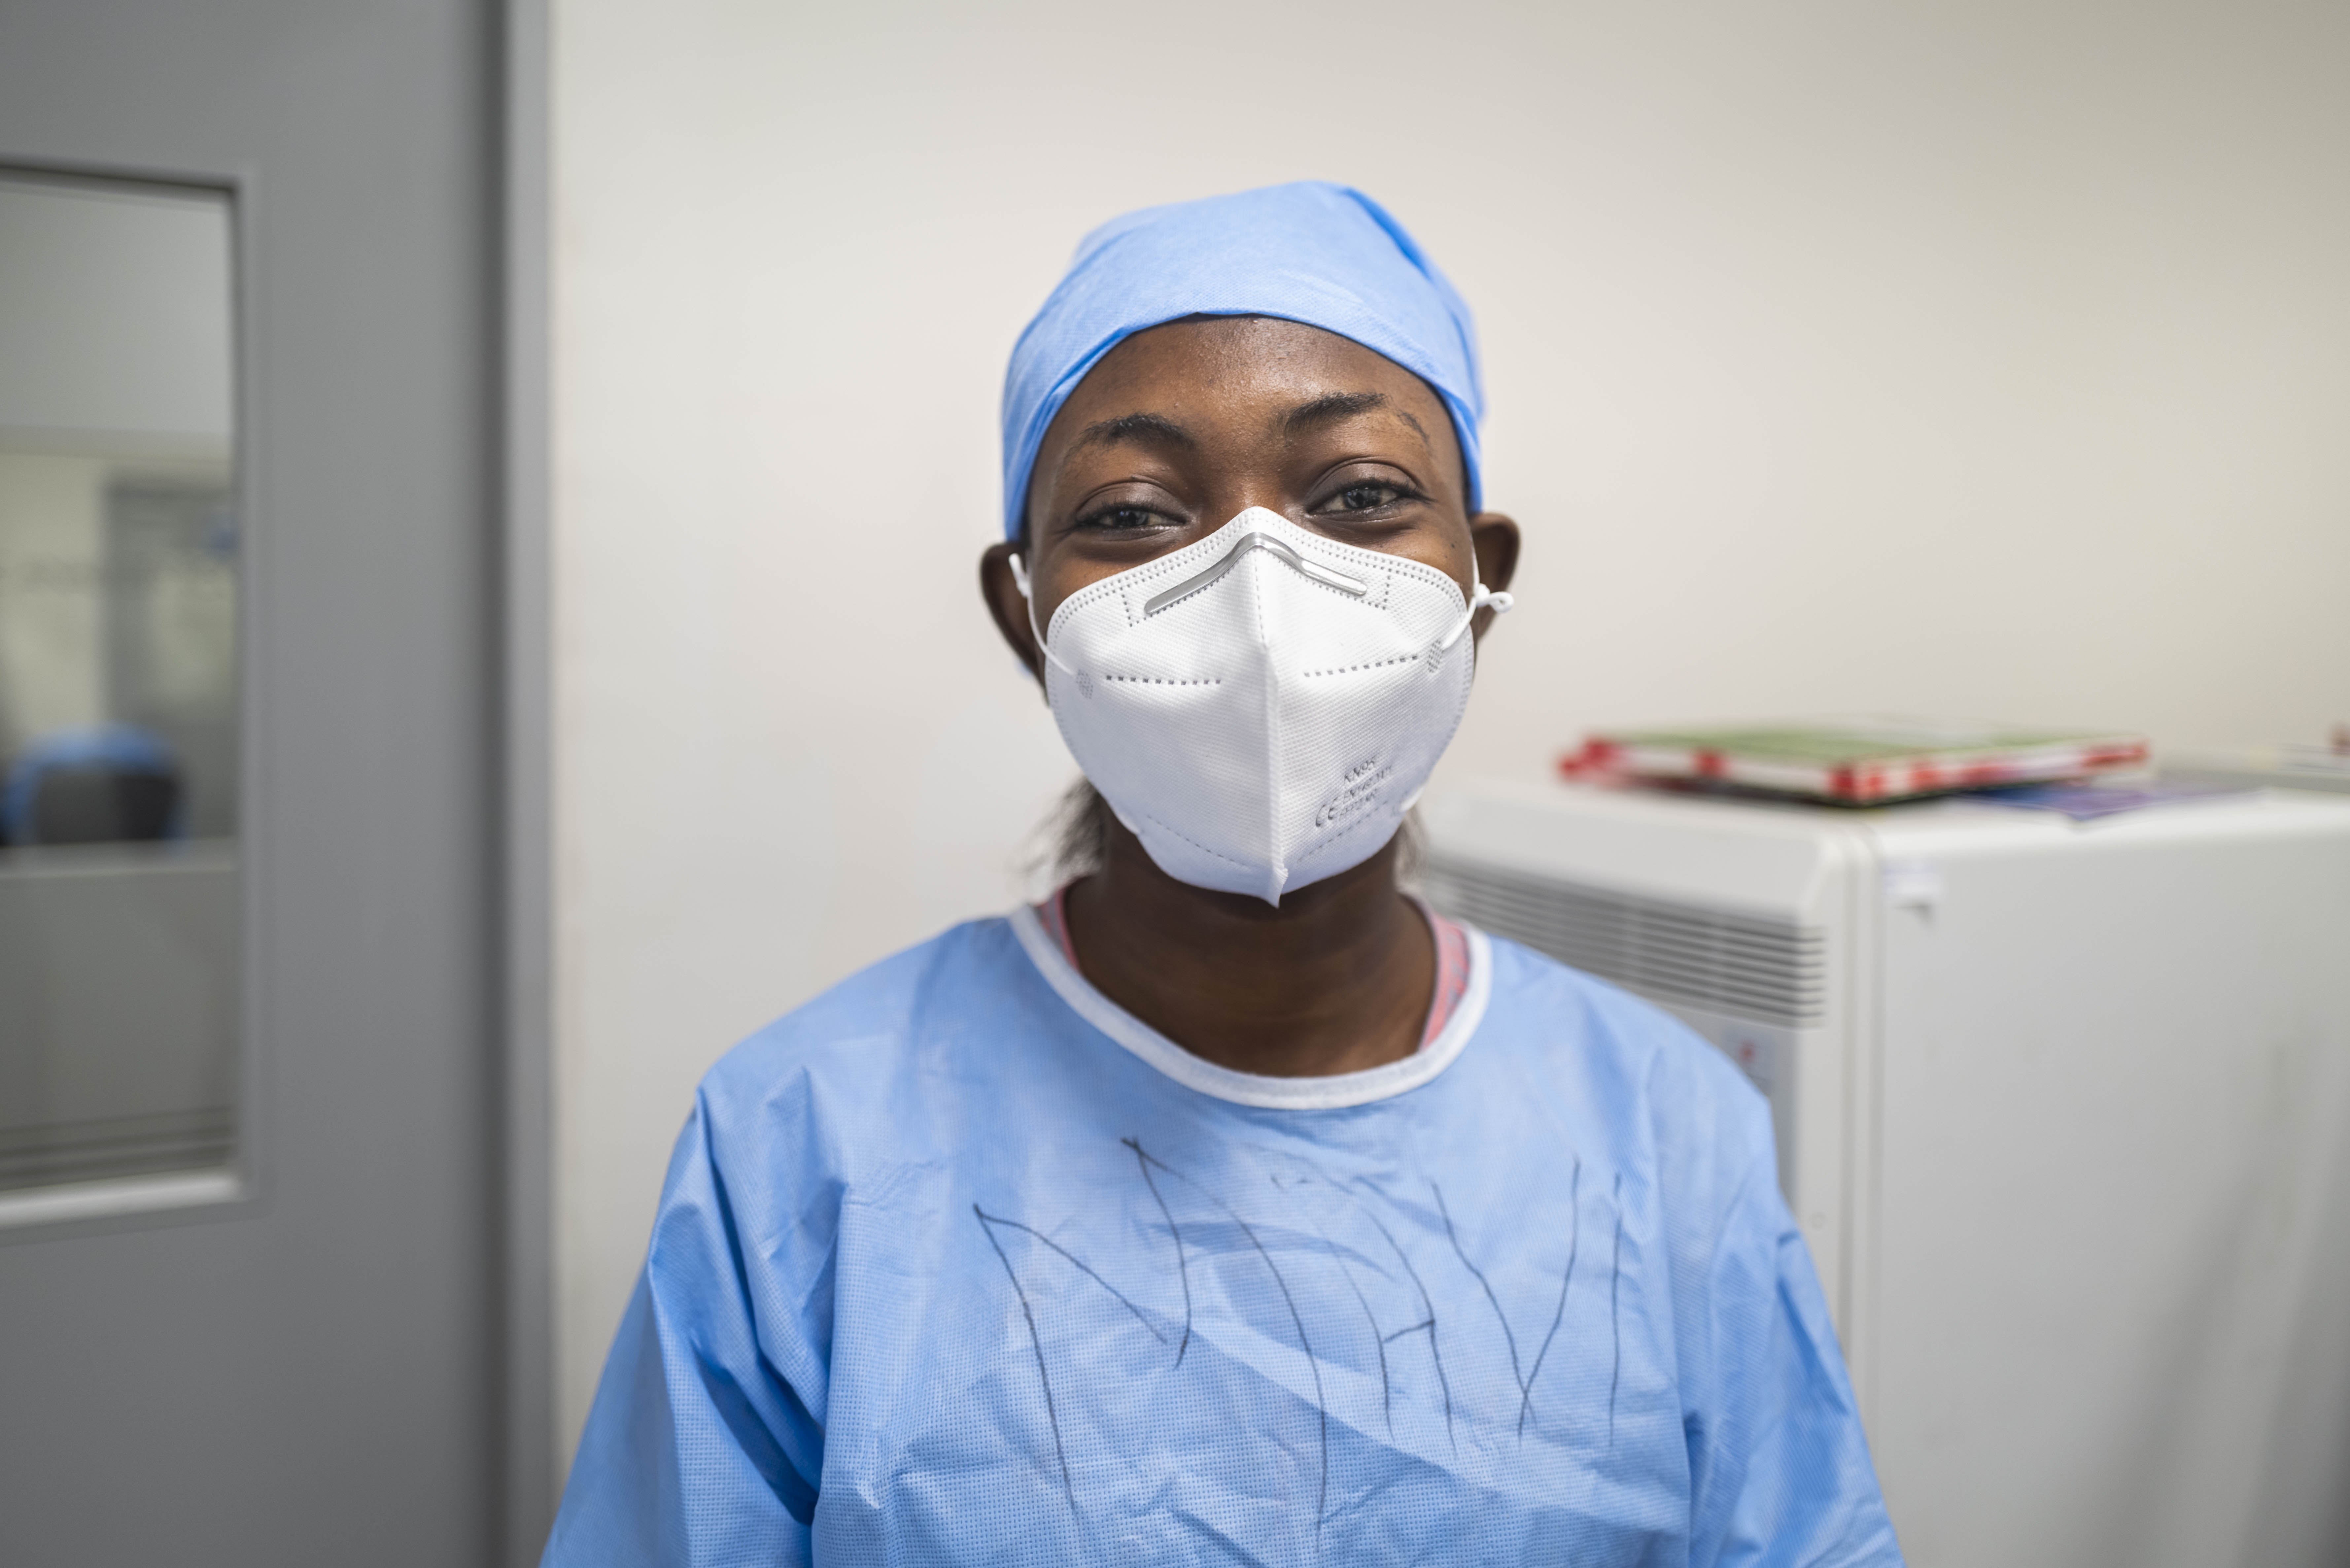 السرطان وفيروس كورونا في إفريقيا: التحديات التي تواجه المنظمات التطوعية